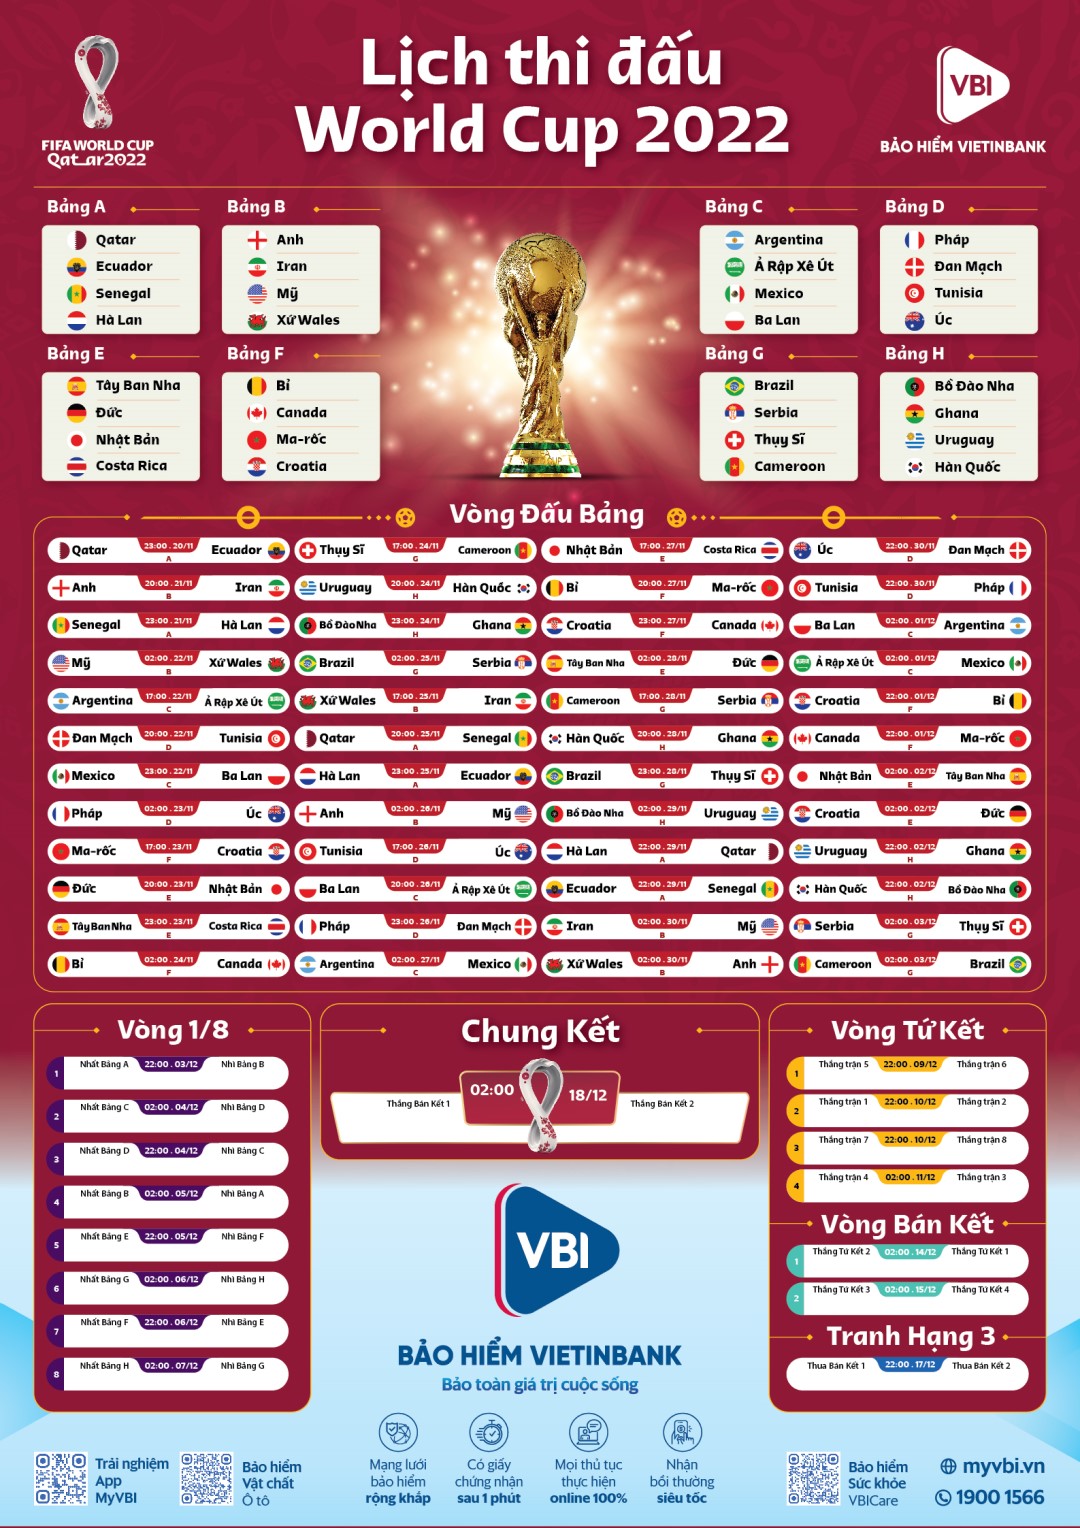 LỊCH THI ĐẤU WORLD CUP 2022 THEO GIỜ VIỆT NAM